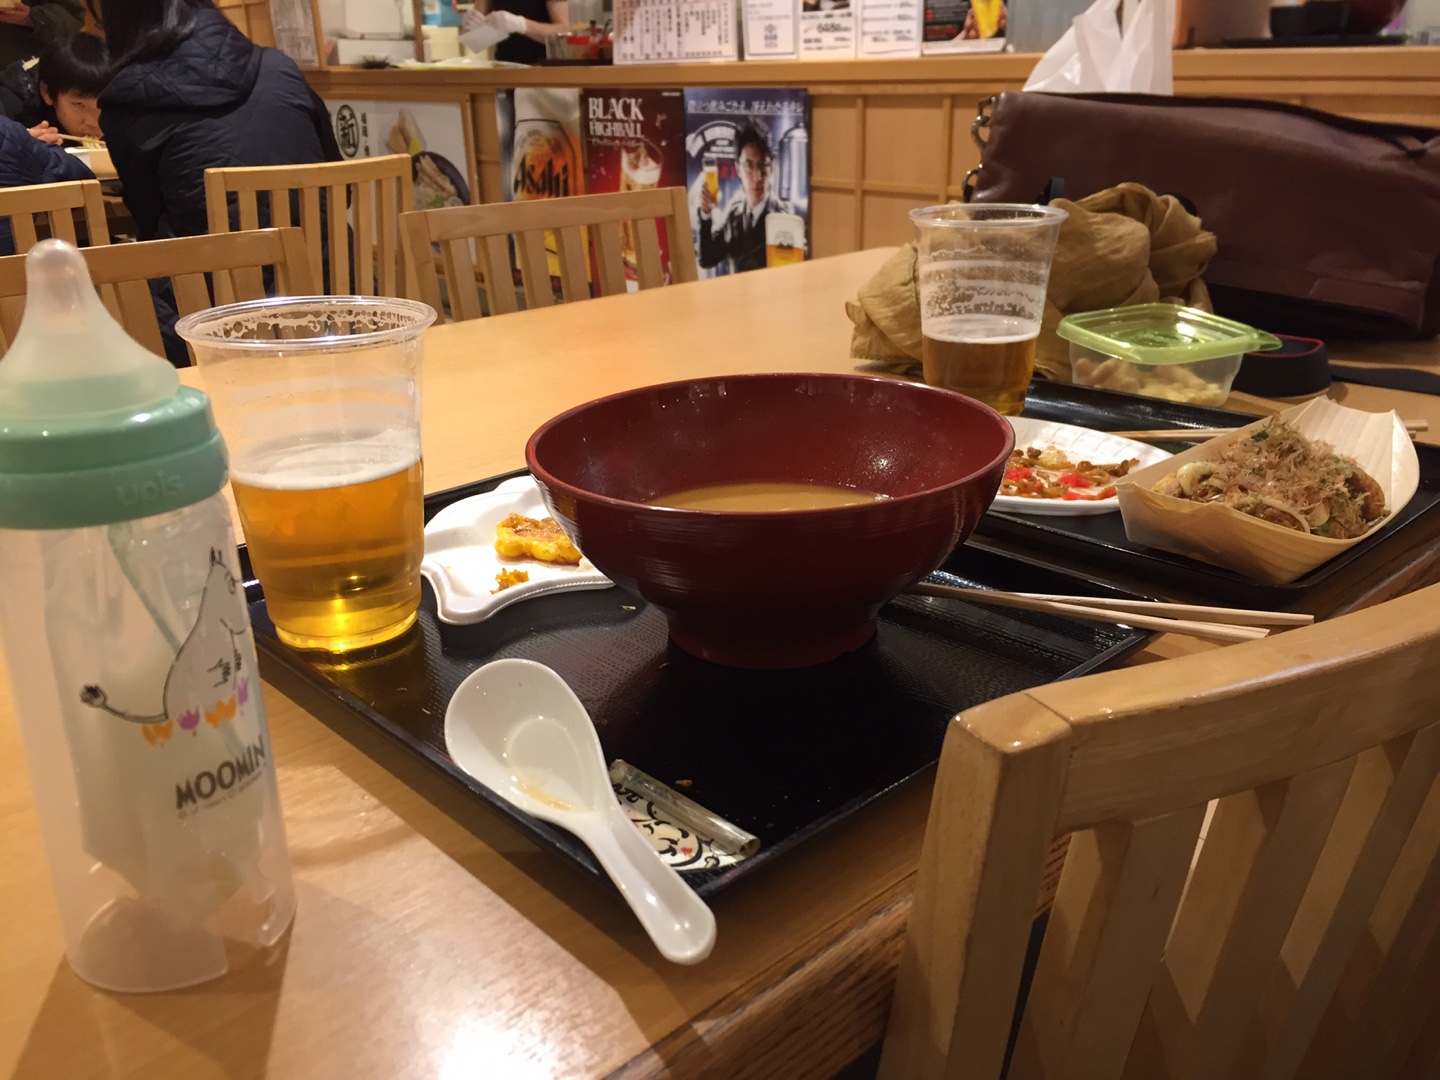 아이와 함께 일본 여행 갔을 때. 들어갈 수 있는 식당을 찾지 못해 푸드코트에서 분유와 맥주를 함께 해결했다. 난장판이 된 식탁. 